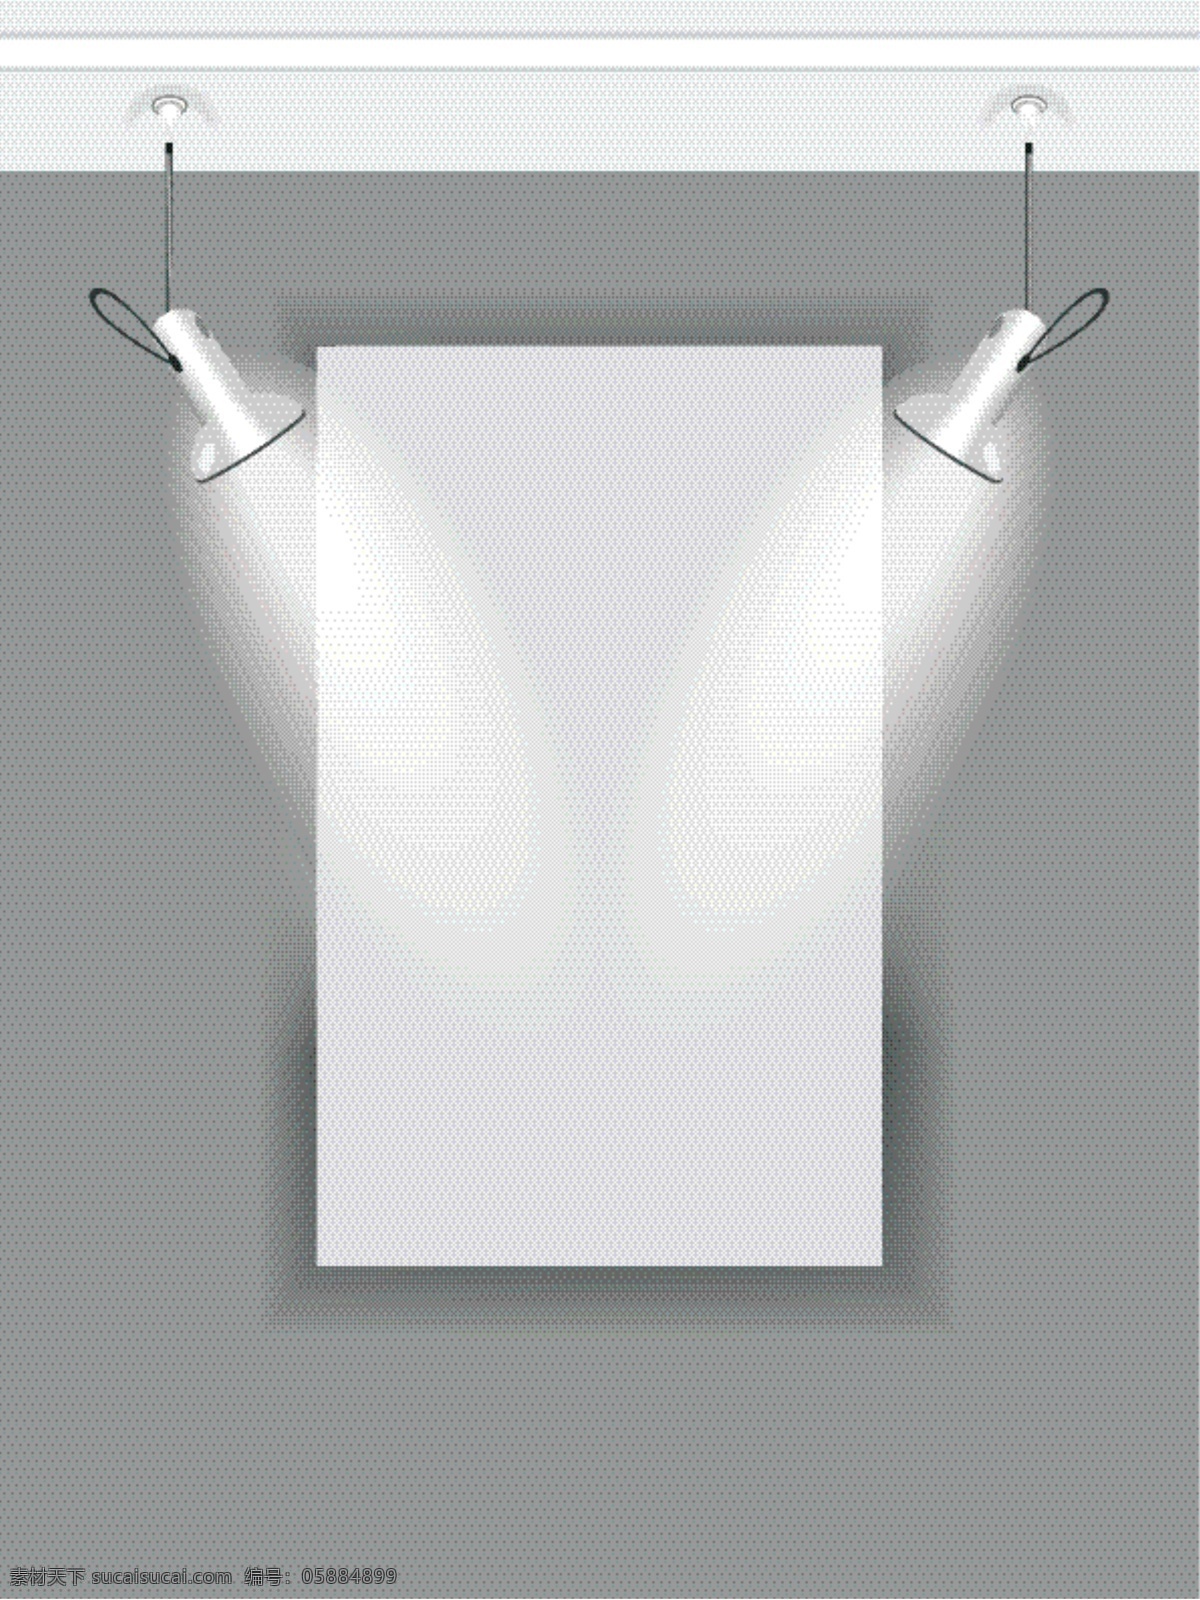 射灯矢量 展览展示 模板 凳子 墙面 射灯 矢量素材 相框 展板 展览 展示 矢量图 其他矢量图